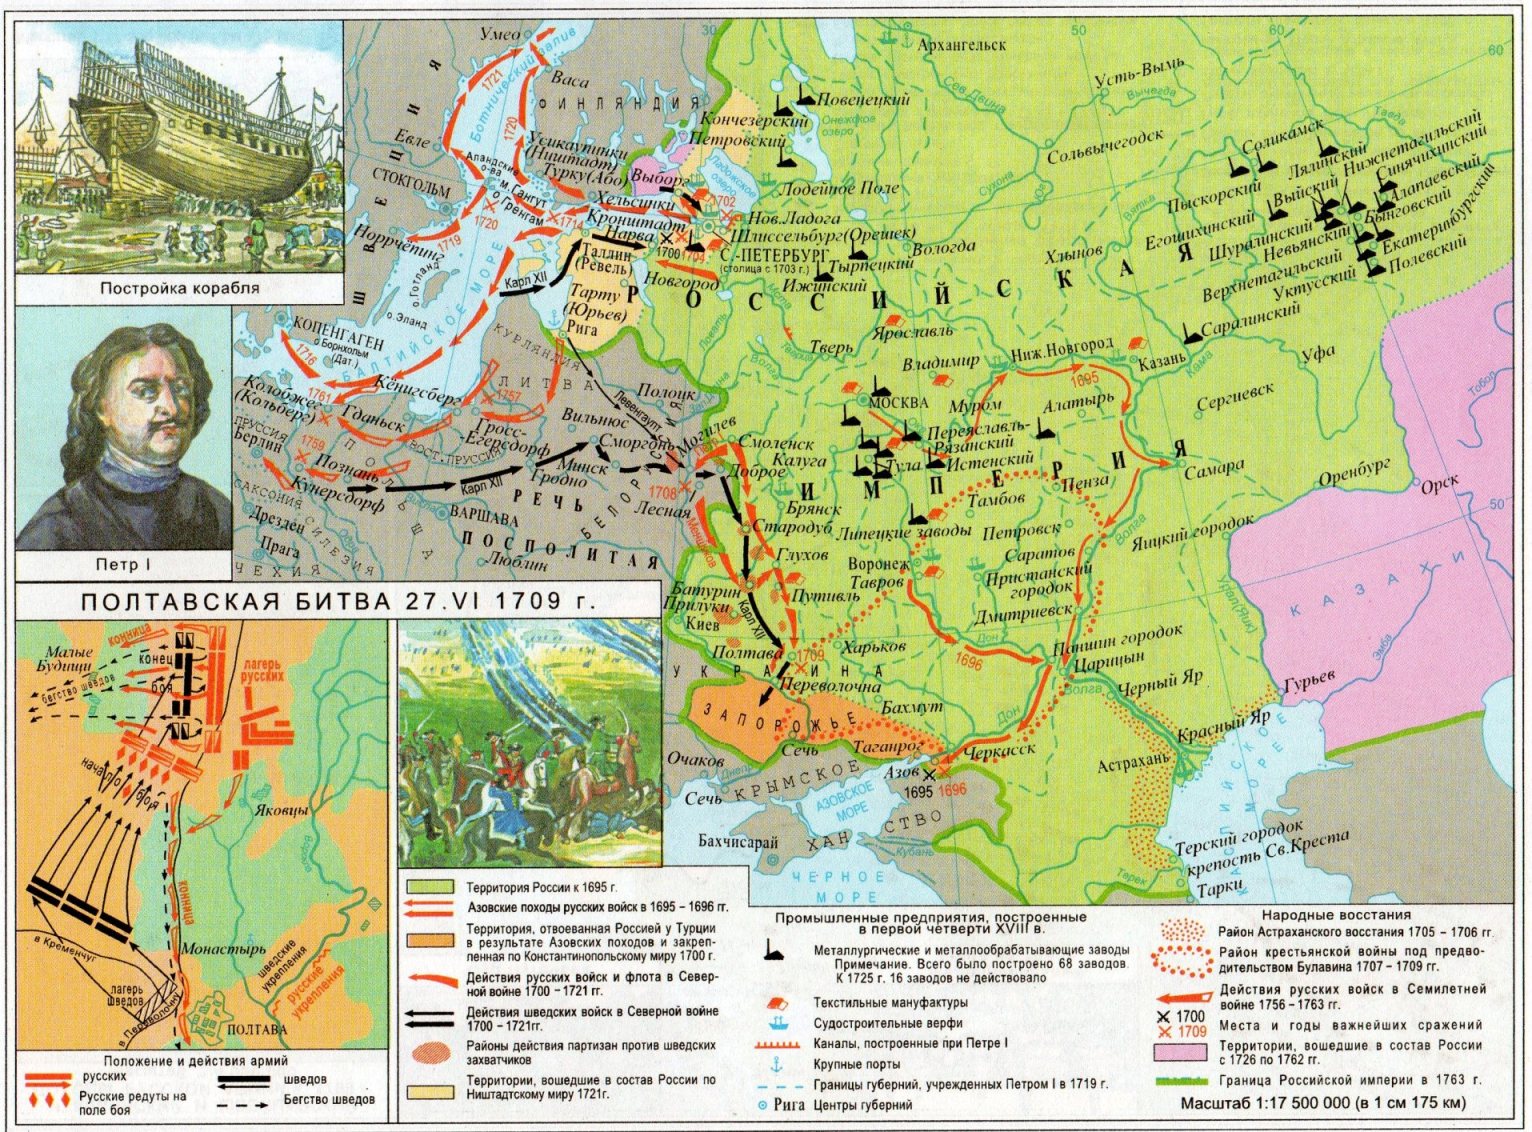 Места добычи золота в россии во второй половине 19 века карта